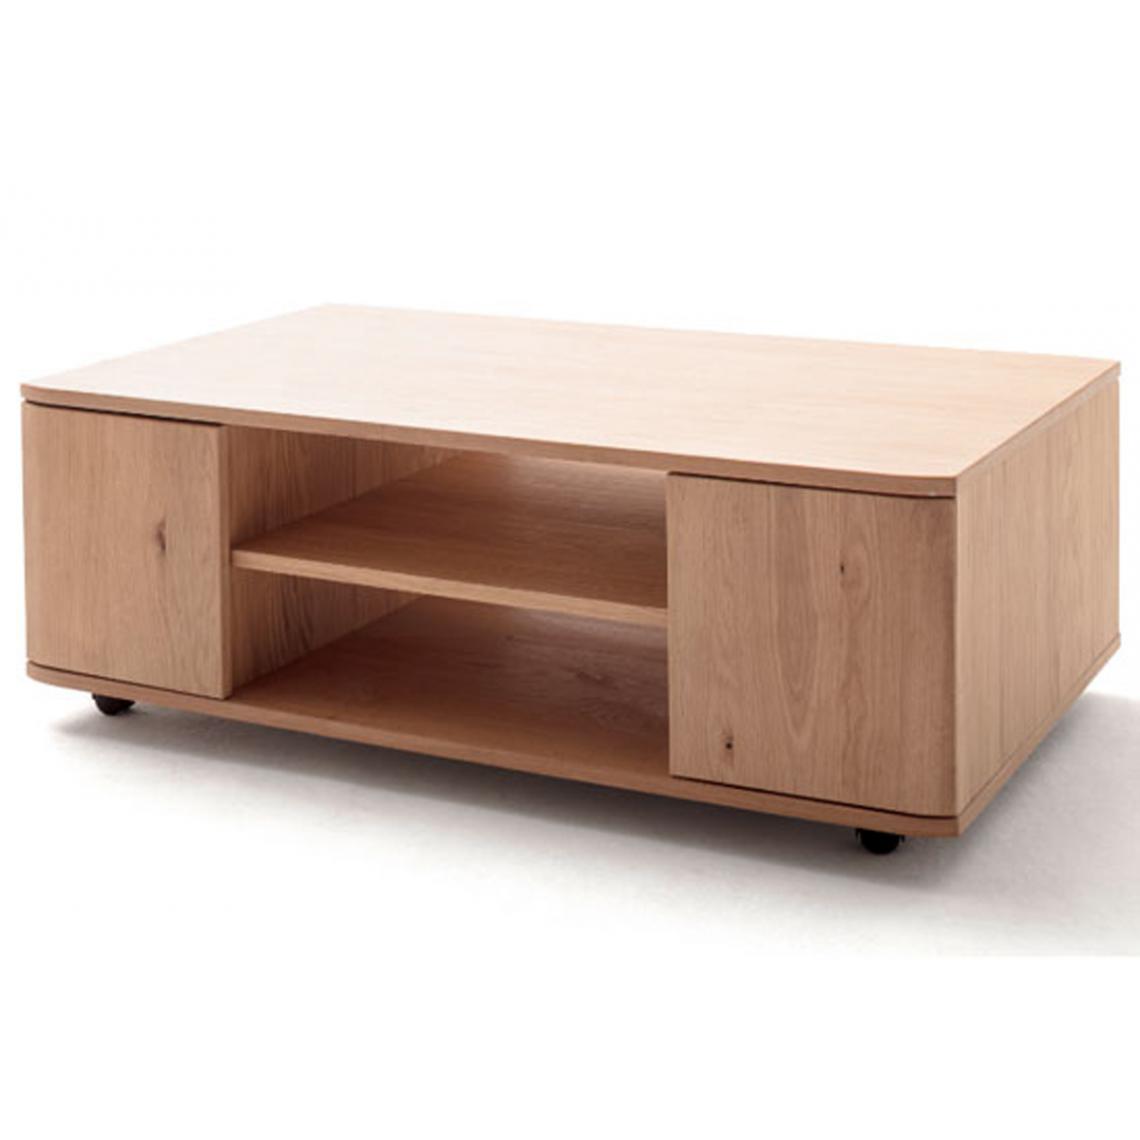 Pegane - Table basse en chêne sombre bianco huilé - L.115 x H.41 x P.70 cm - Tables basses